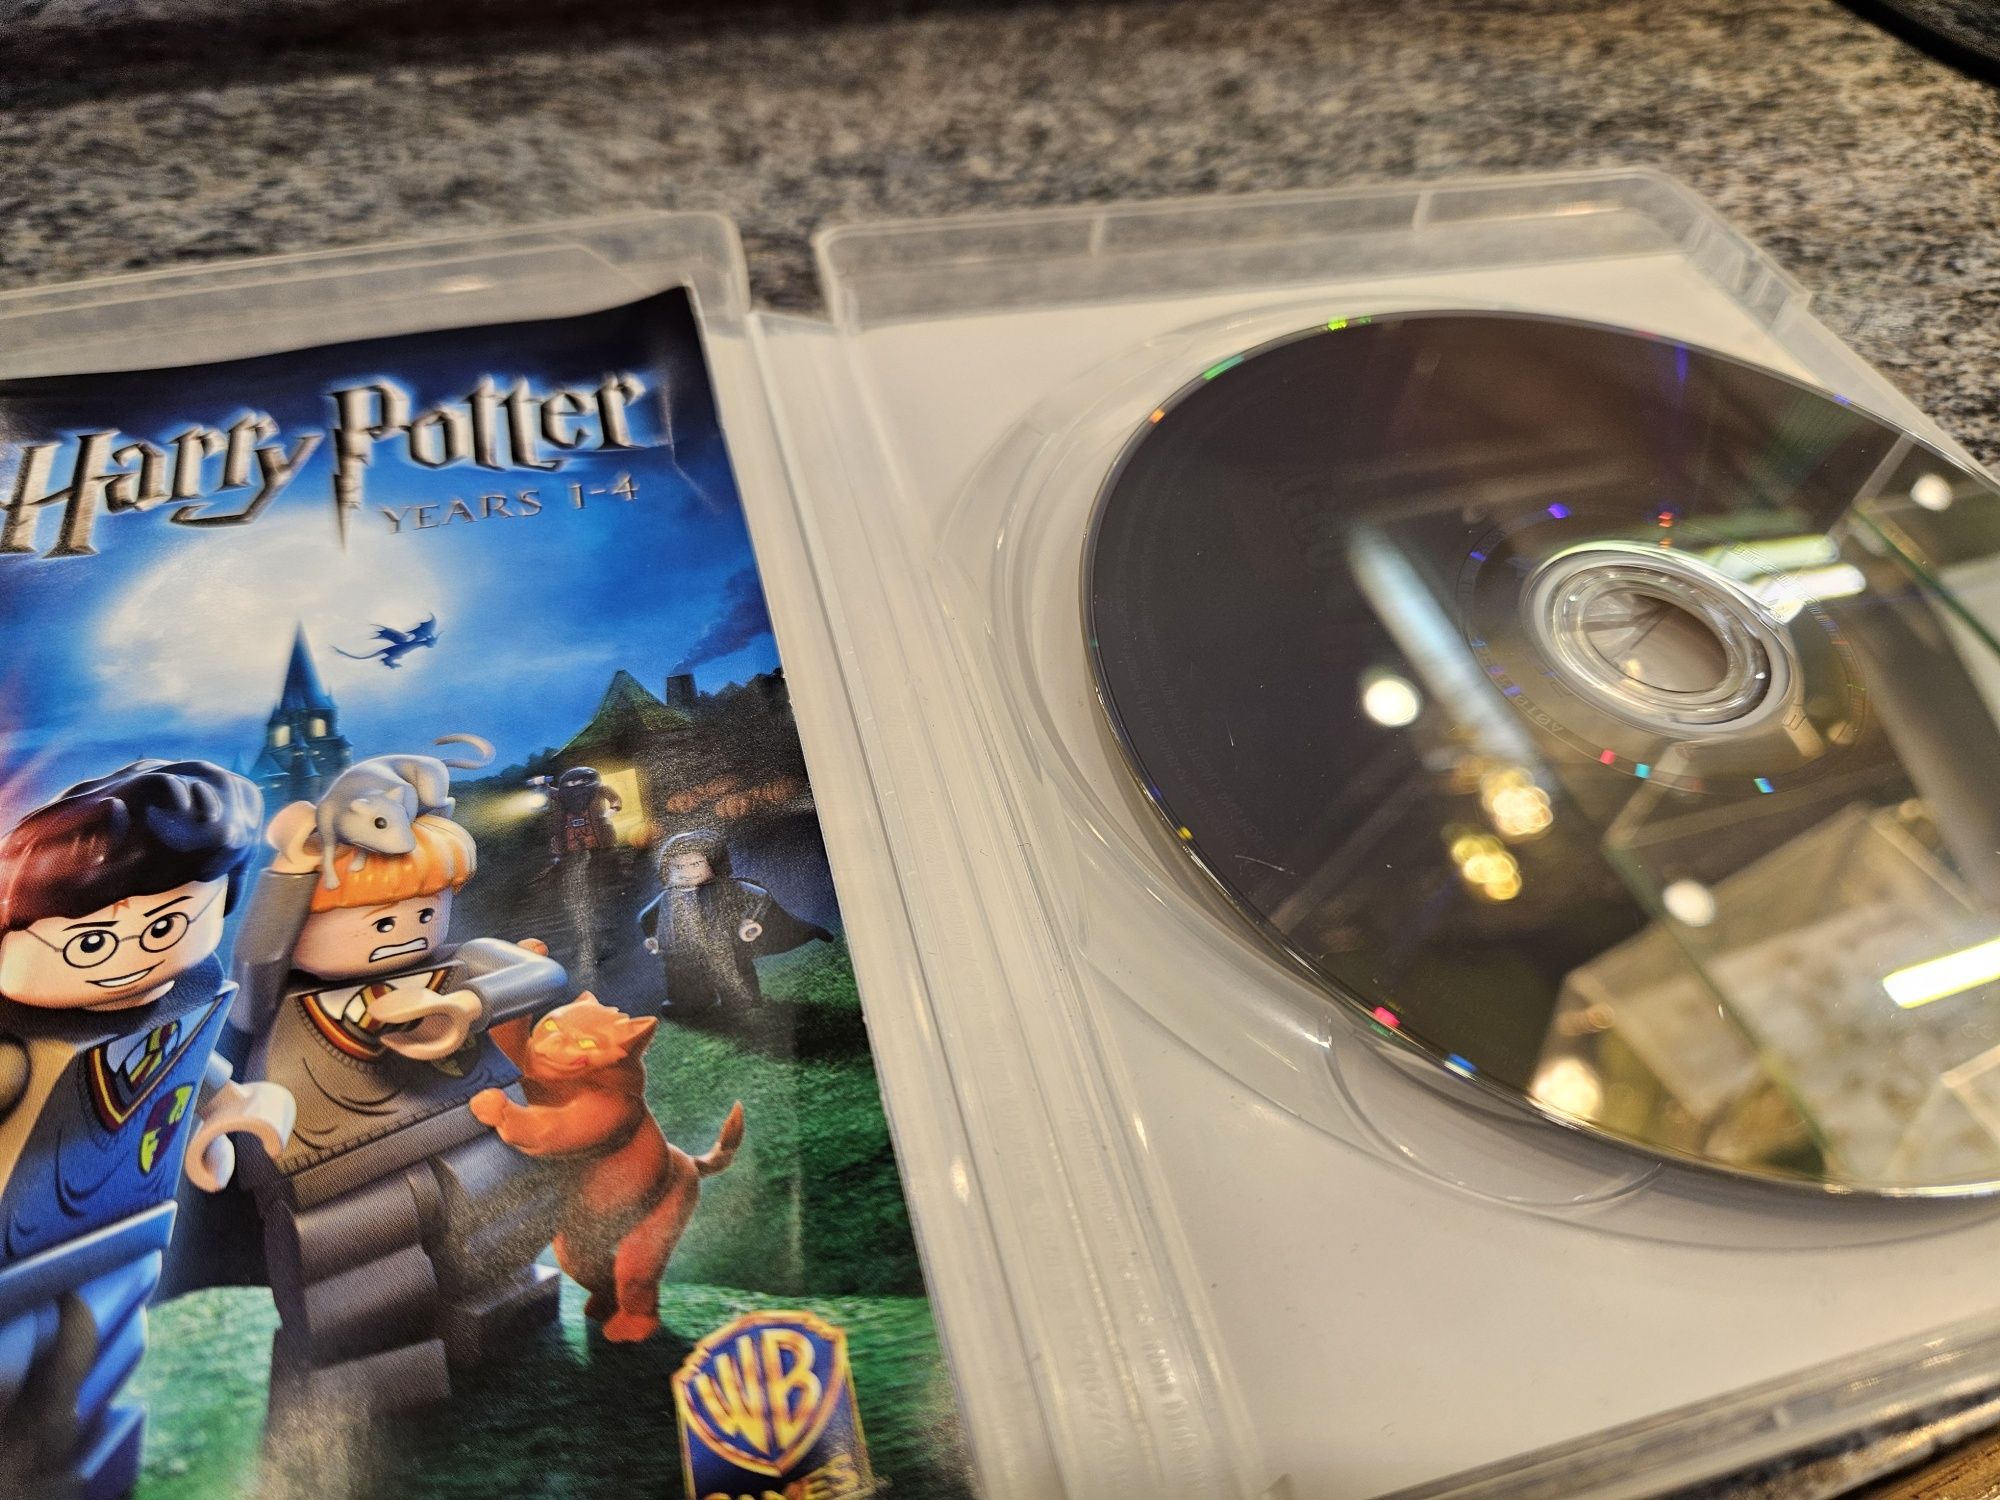 Gra na PS3 Lego Harry Potter years 1-4 / Sony PS3